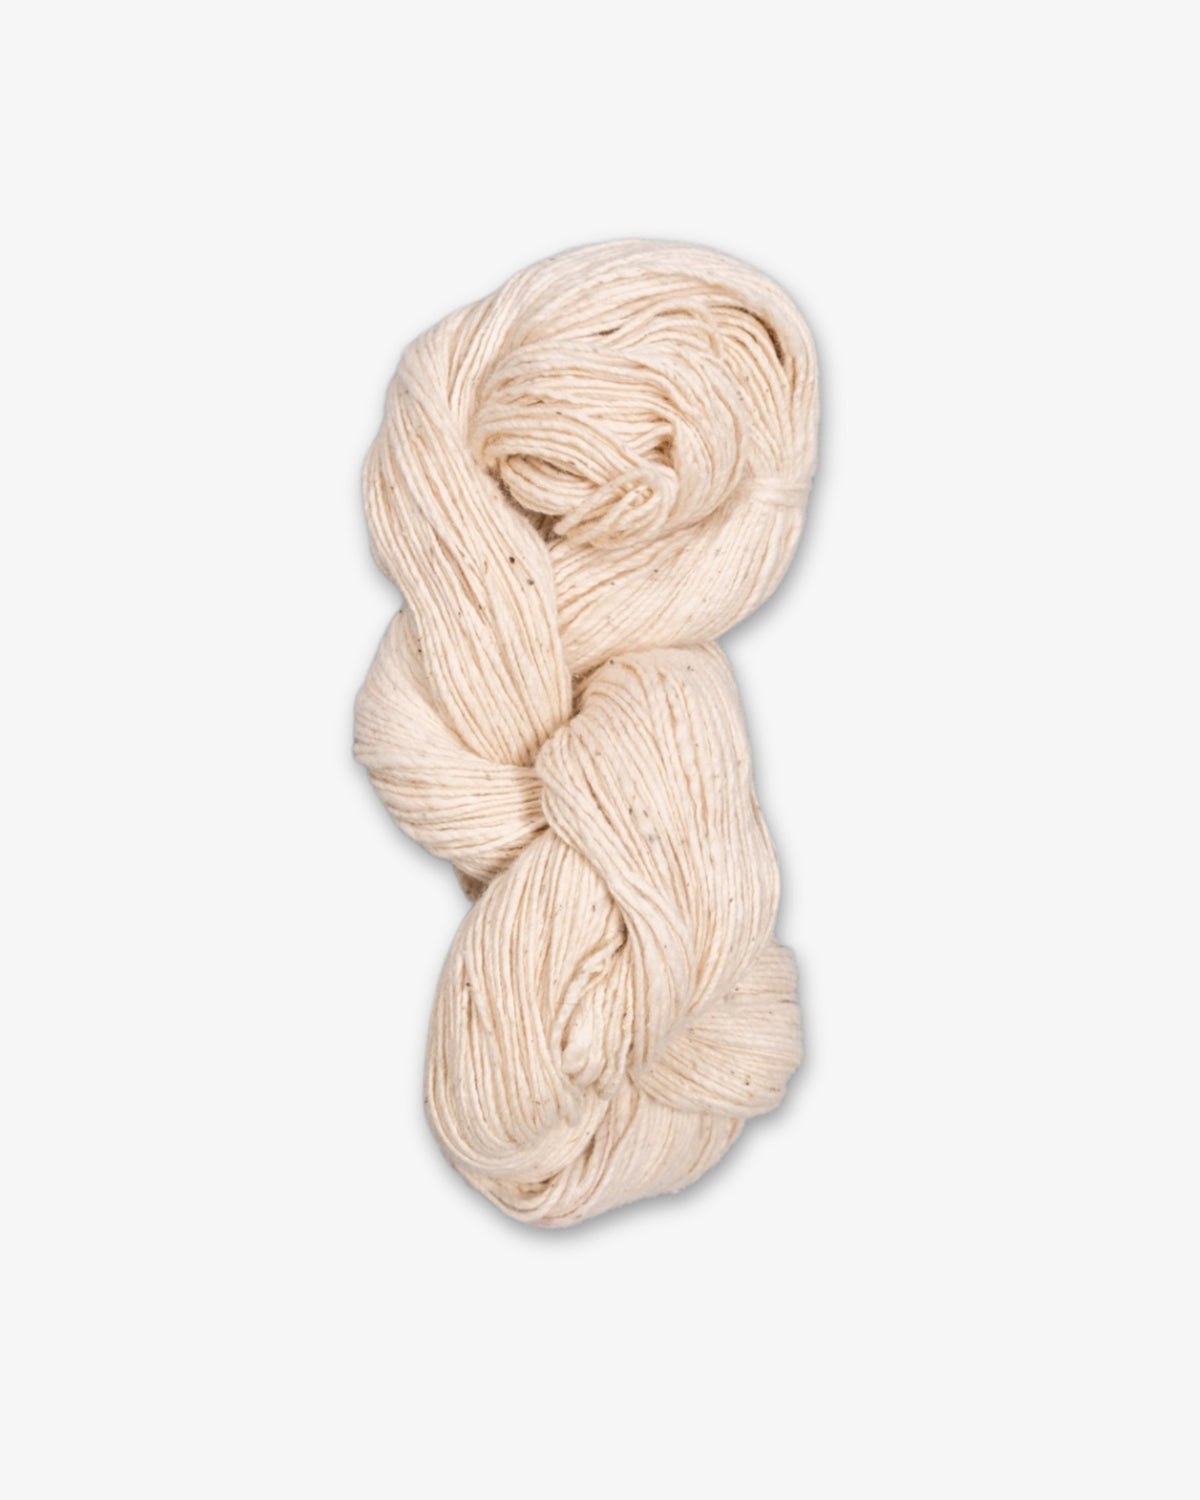 Handspun Kala Cotton Yarn by 11.11